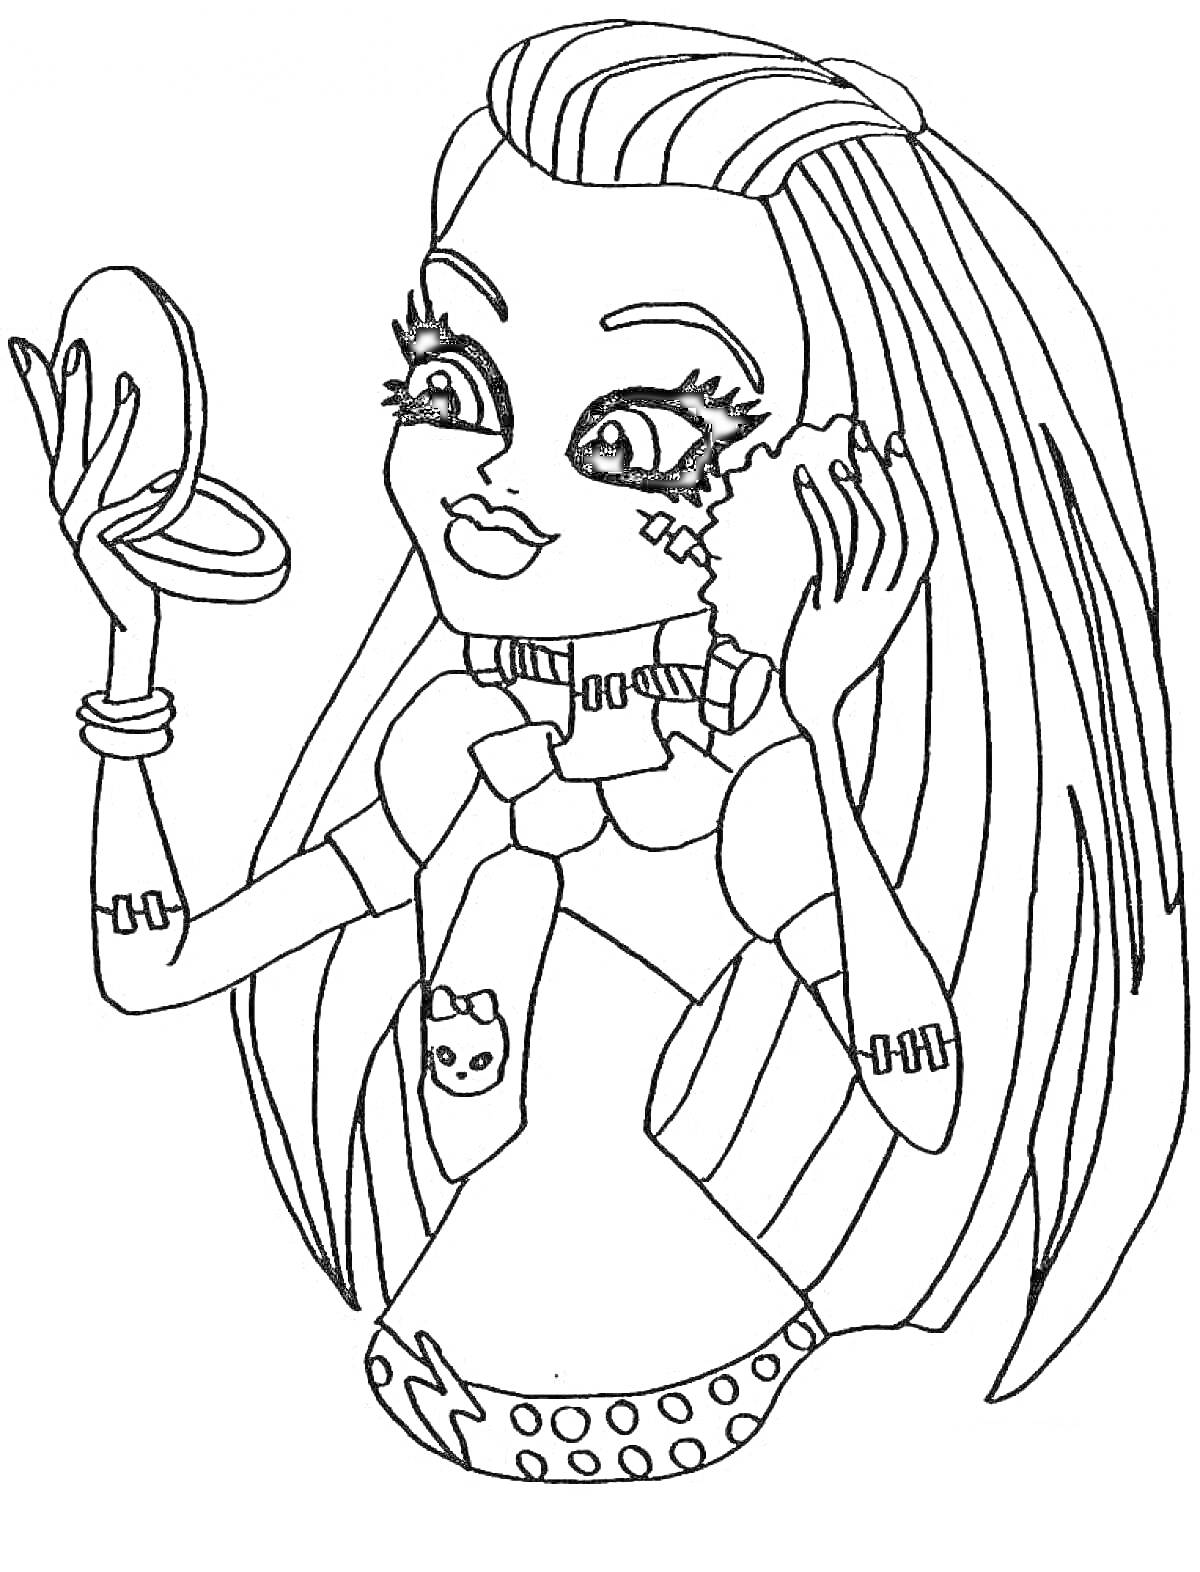 Раскраска Девочка из Монстр Хай с длинными волосами красит лицо, держа зеркало и пуховку. Она одета в топ с изображением кошки и украшена заклепками, браслетами и шрамами на руках.